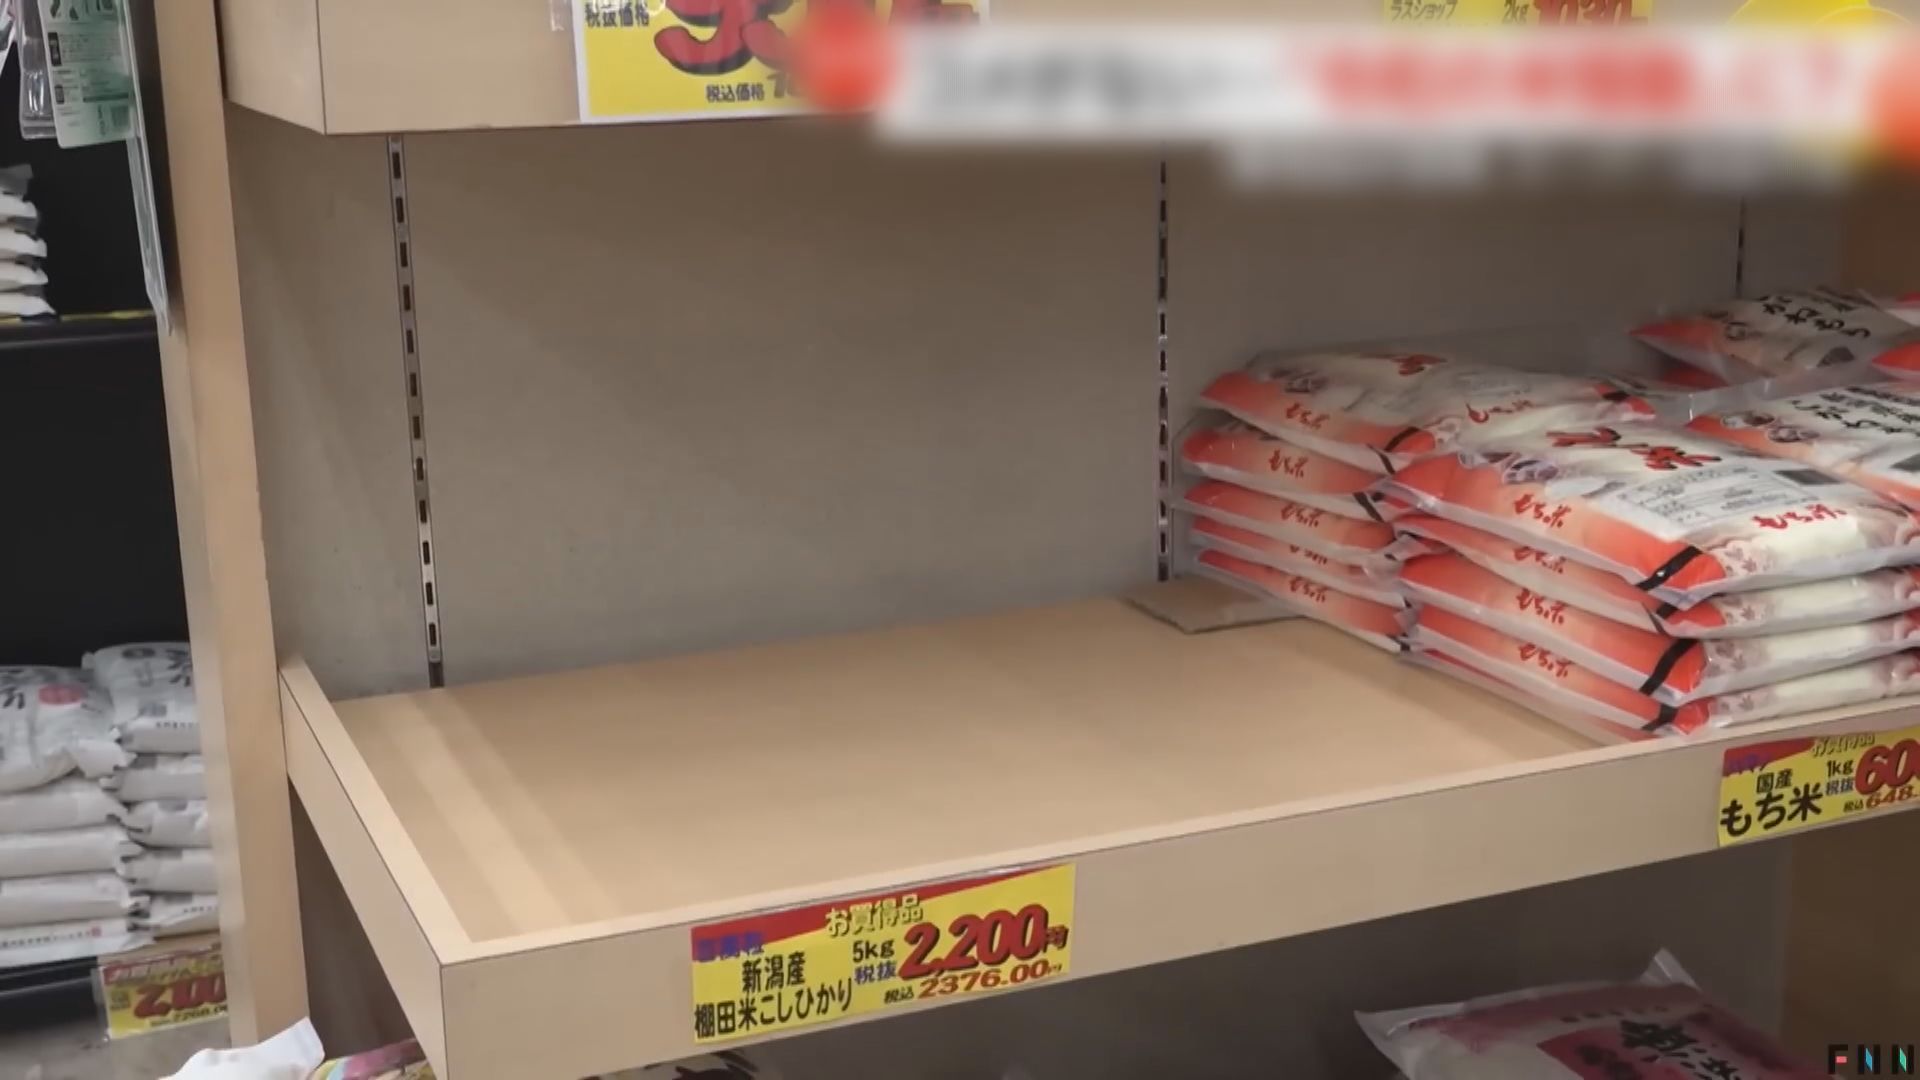 日本米供應緊張 當地超市壽司店叫苦 當局稱庫存充足籲冷靜